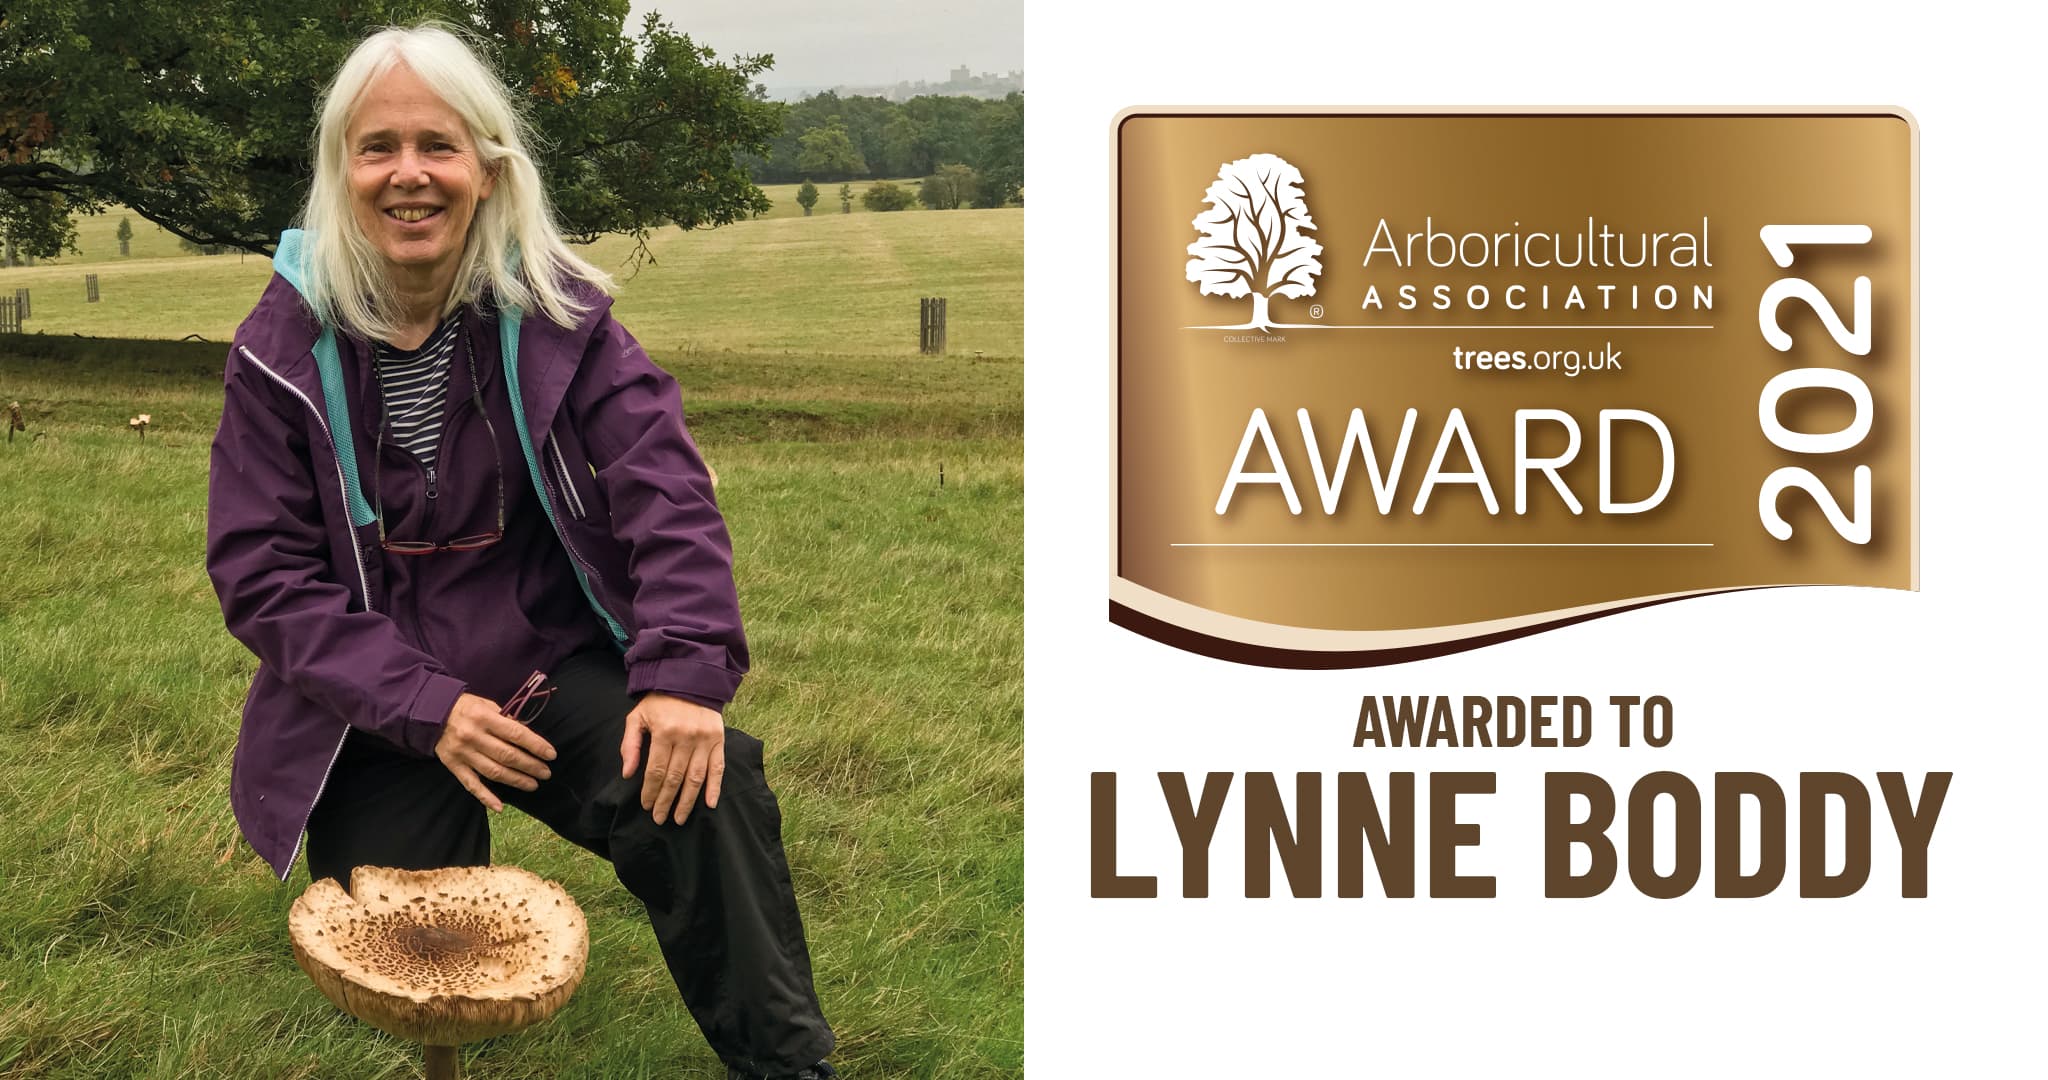 Lynne Boddy awarded the AA Award 2021